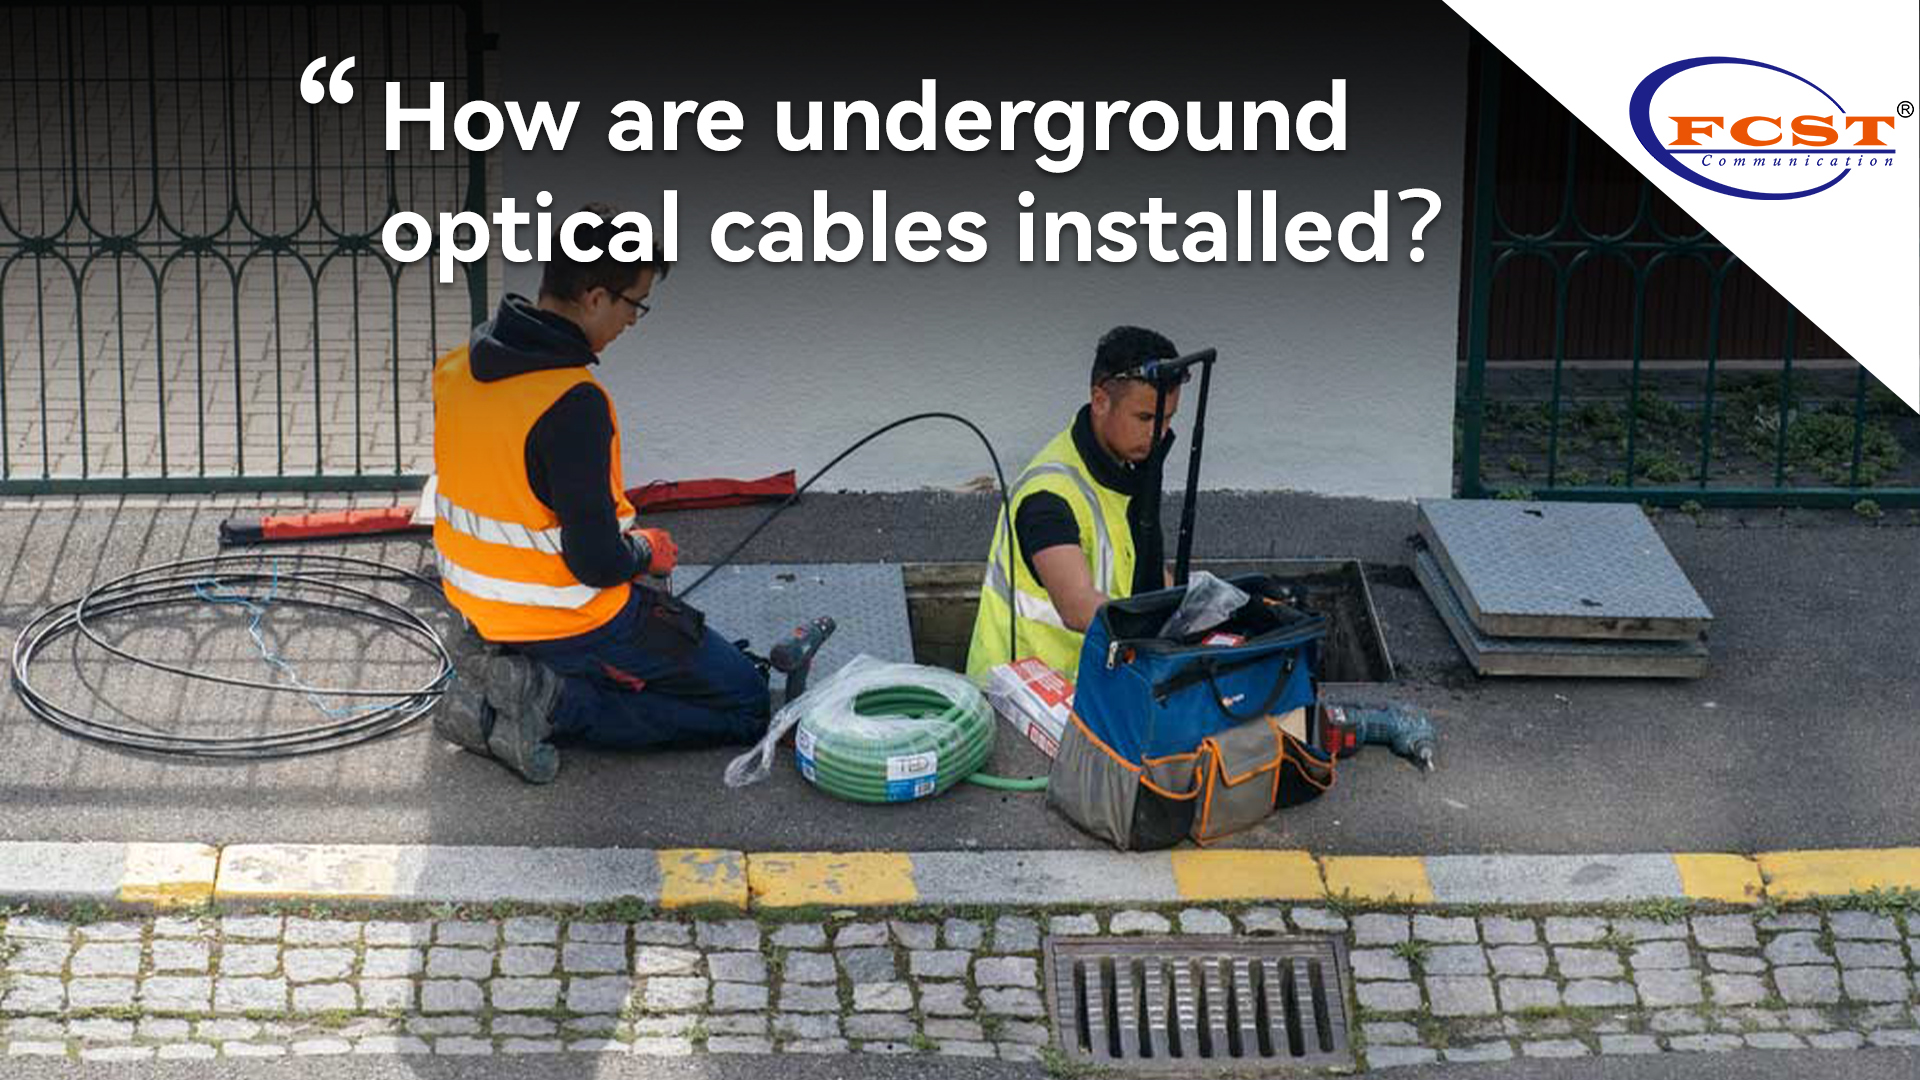 Comment les câbles optiques souterrains sont-ils installés?